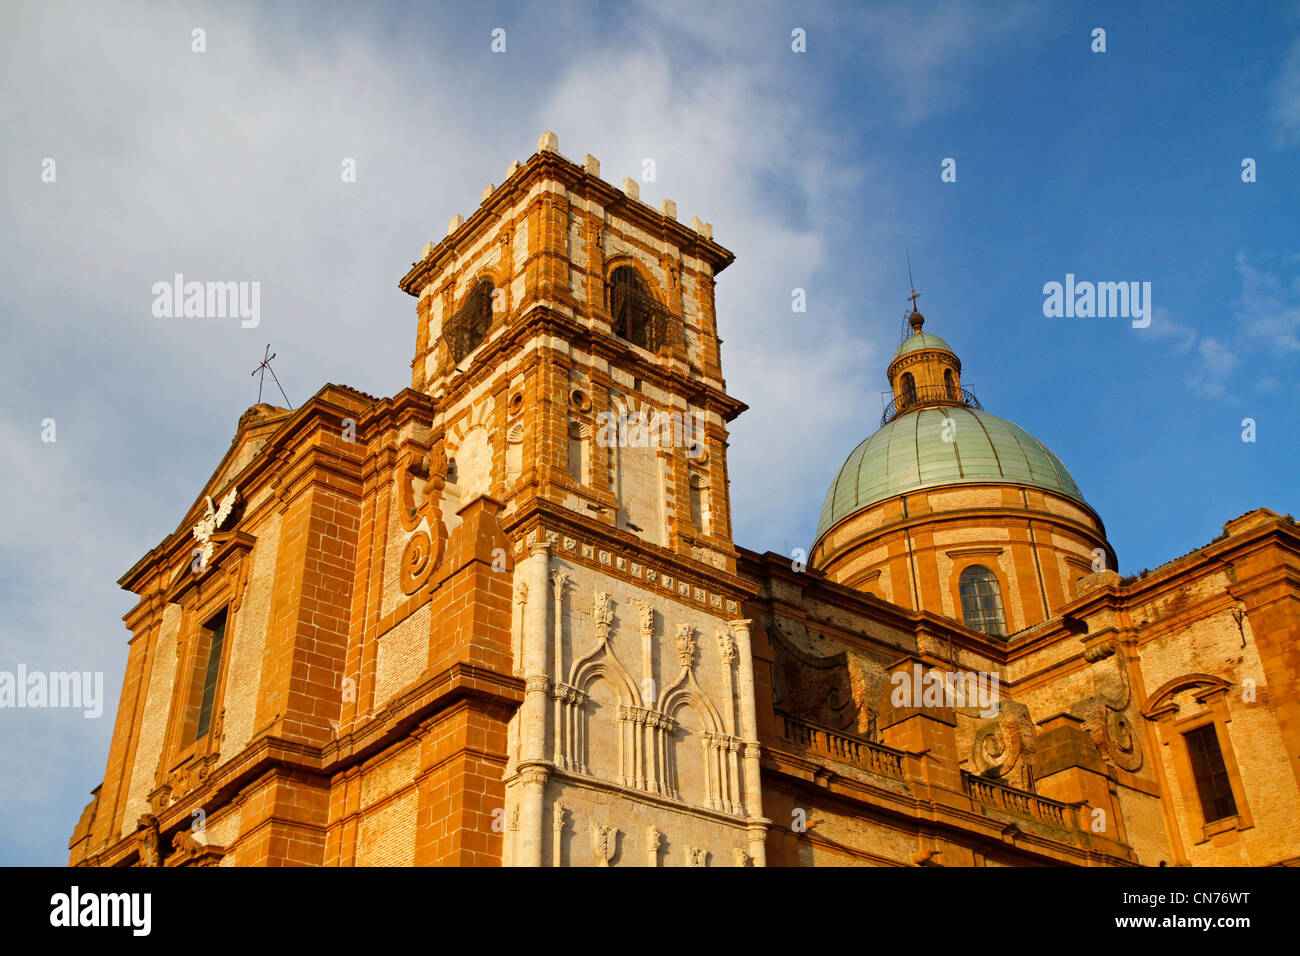 Duomo, Piazza Armerina, Enna province, Sicily, Italy Stock Photo